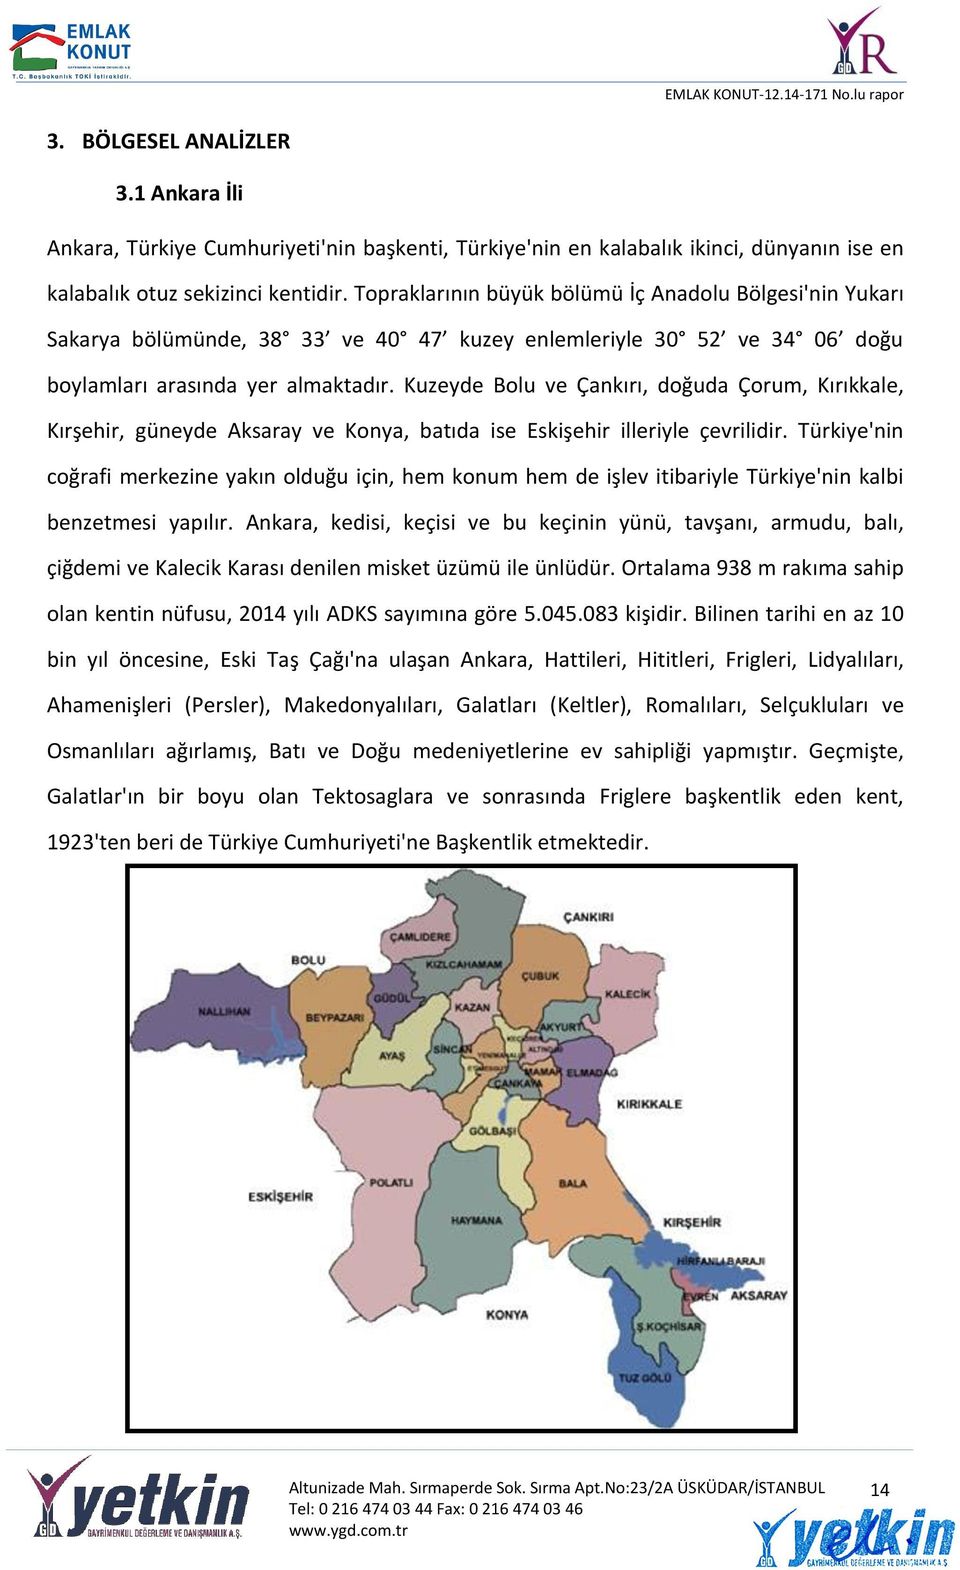 Kuzeyde Bolu ve Çankırı, doğuda Çorum, Kırıkkale, Kırşehir, güneyde Aksaray ve Konya, batıda ise Eskişehir illeriyle çevrilidir.